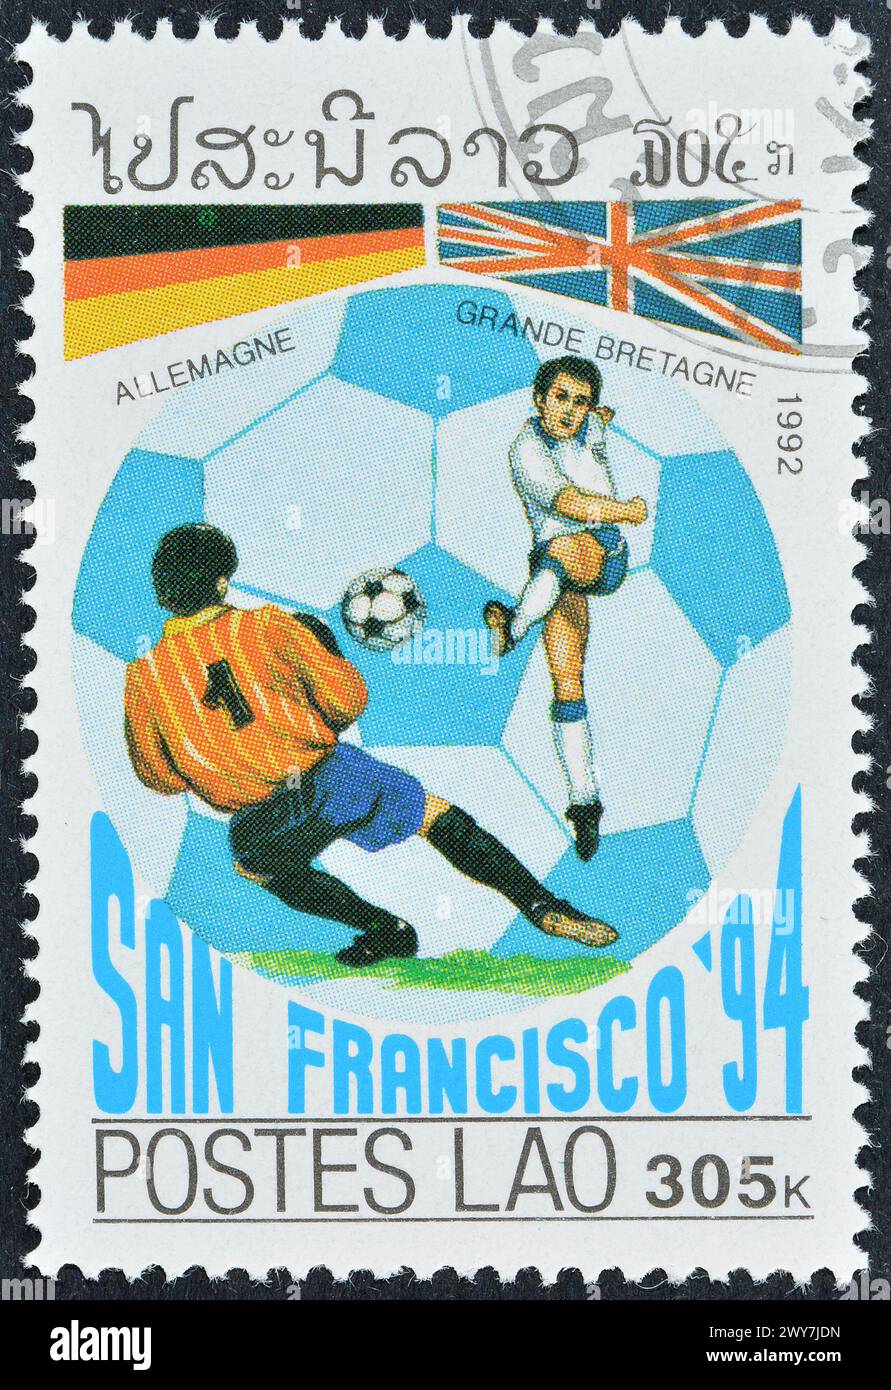 Francobollo cancellato stampato dal Laos, che promuove il campionato mondiale di calcio FIFA 1994, USA, circa 1992. Foto Stock